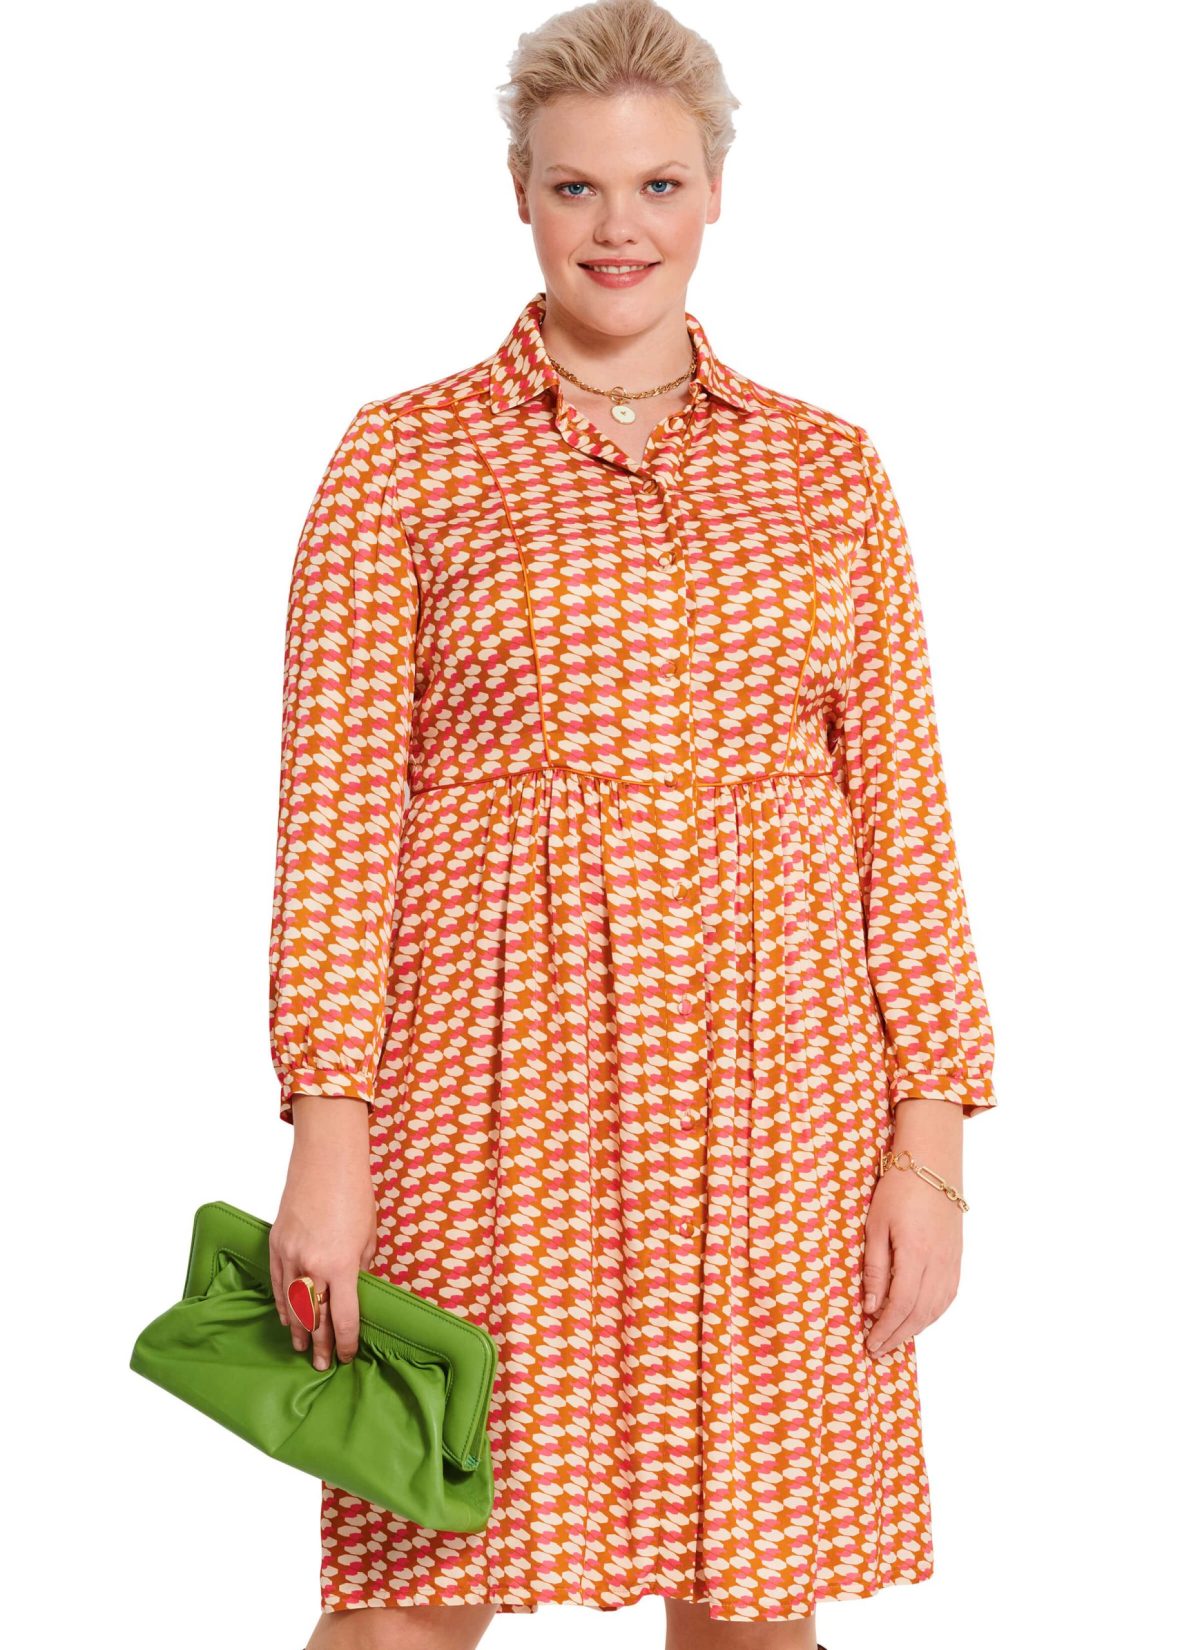 Burda Style Pattern B5882 Misses' Dress